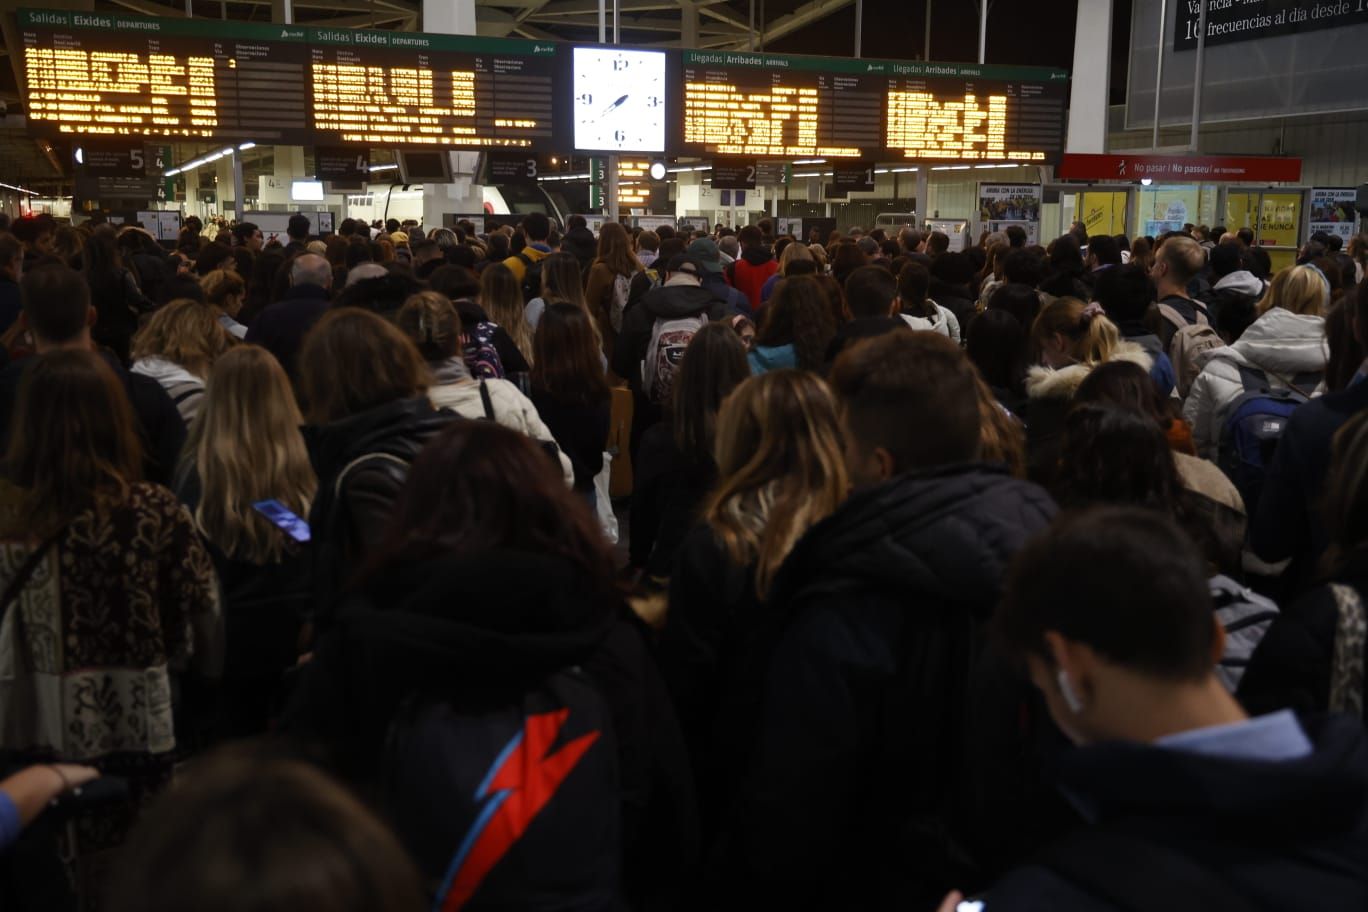 La estación Joaquín Sorolla de València completamente abarrotada